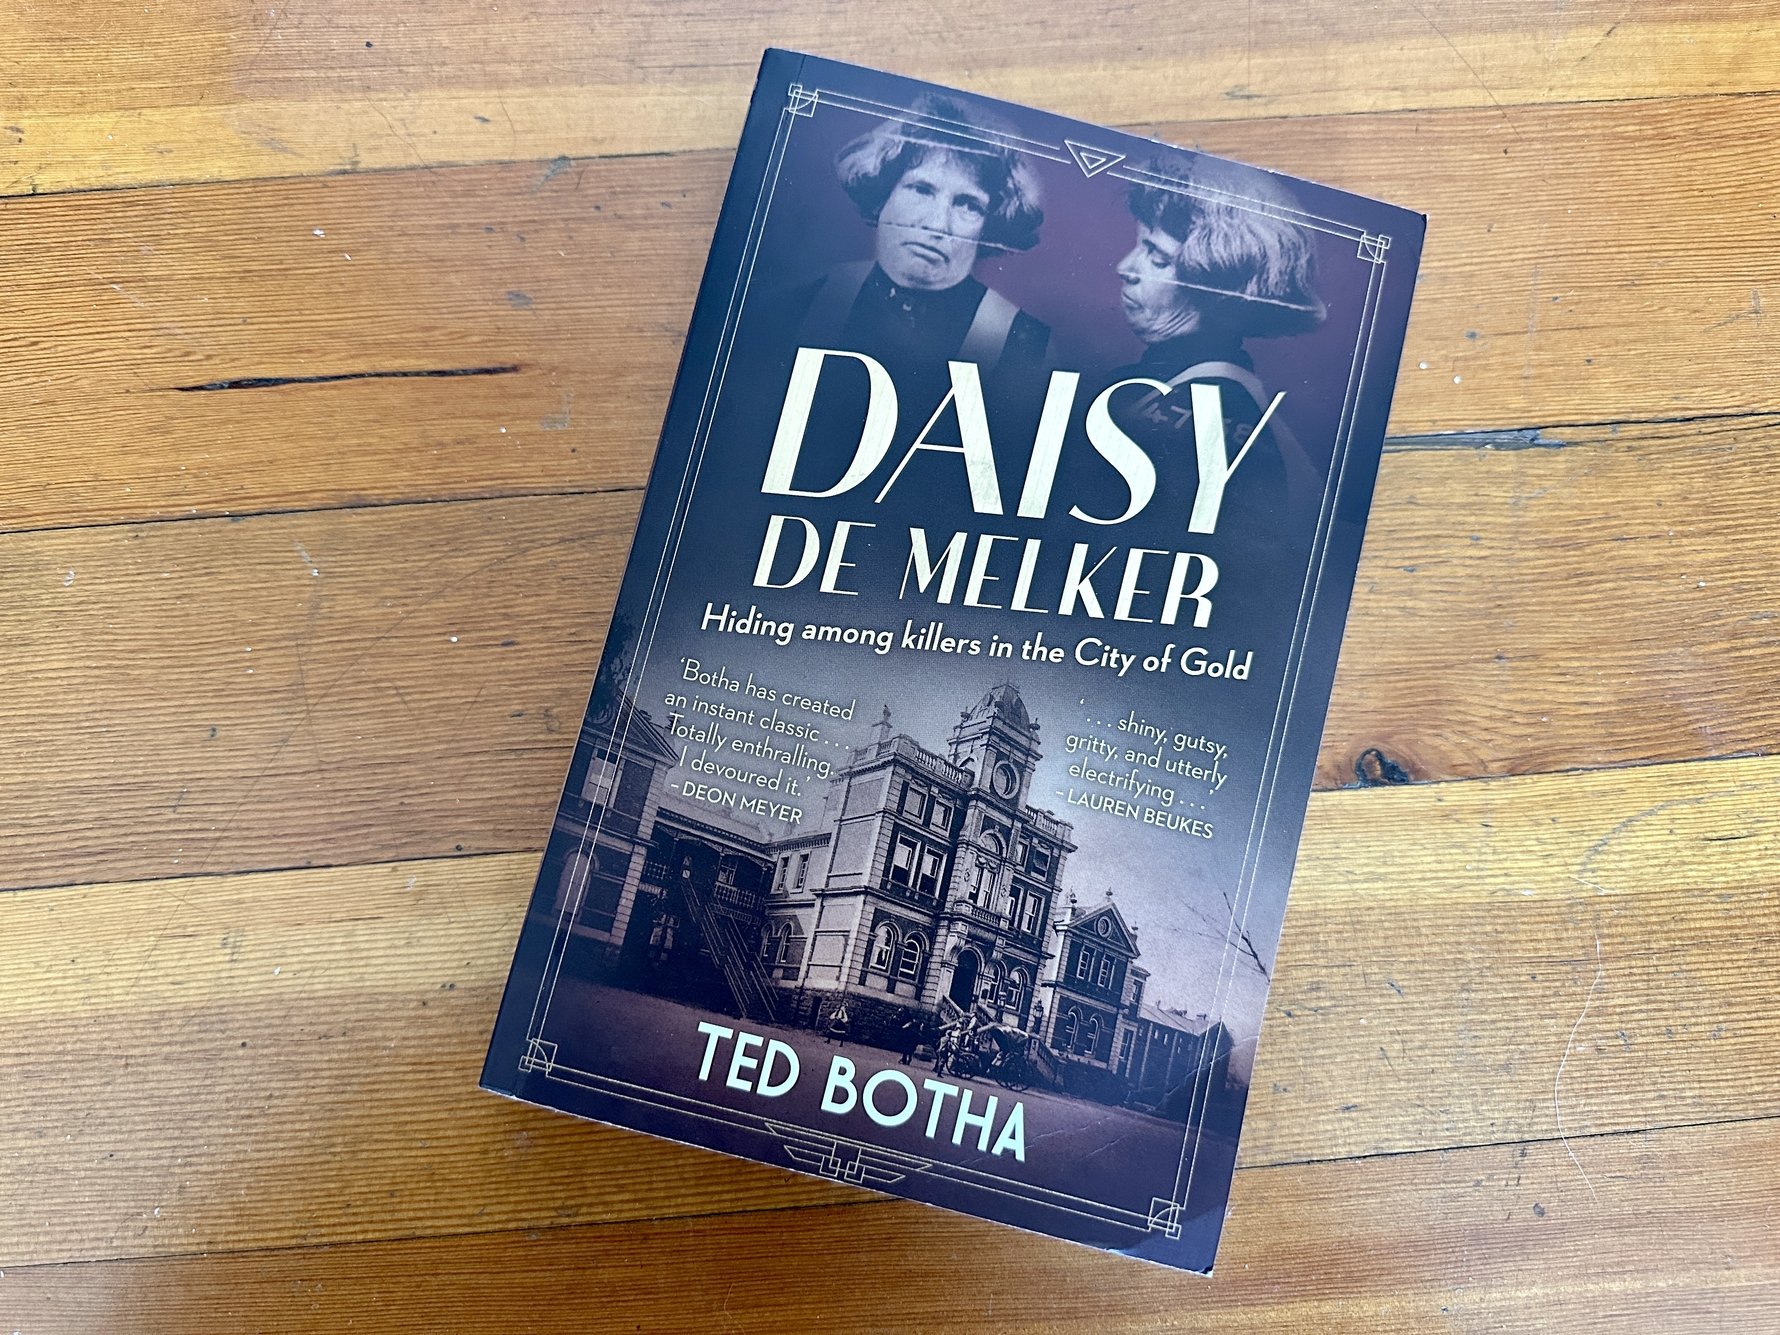 Daisy de Melker by Ted Botha